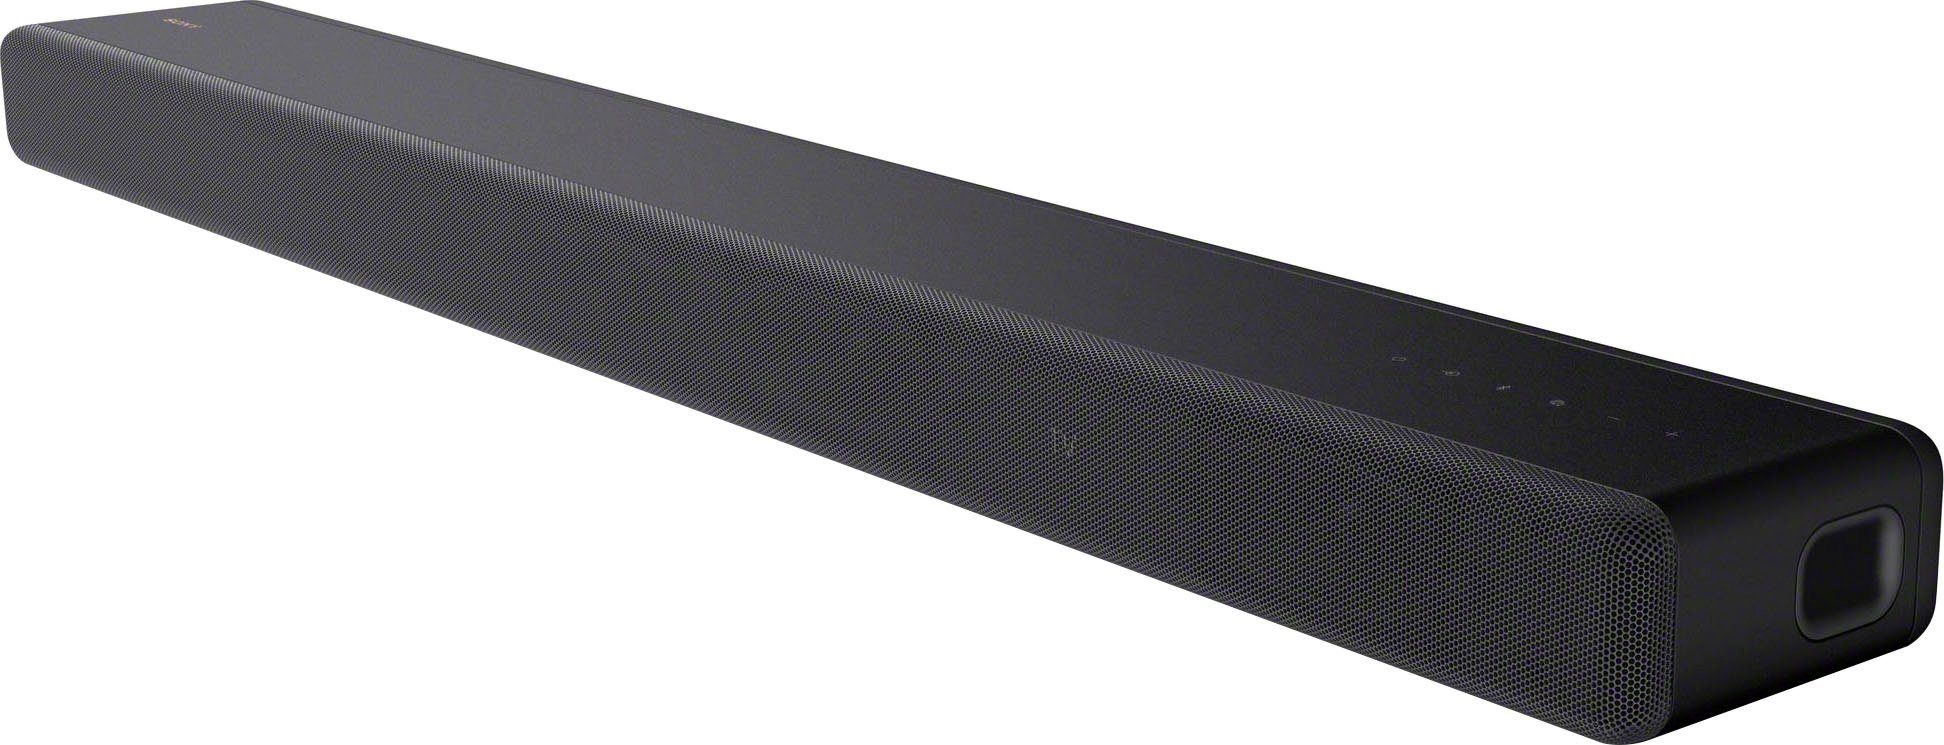 Sony HT-A3000 3.1-Kanal Soundbar 3.1 Soundbar (A2DP Bluetooth, AVRCP Bluetooth, Bluetooth, WLAN (WiFi), 250 W, 3 X-Balanced Front-Lautsprecher inkl. speziellem Mittellautsprecher) | Soundbars